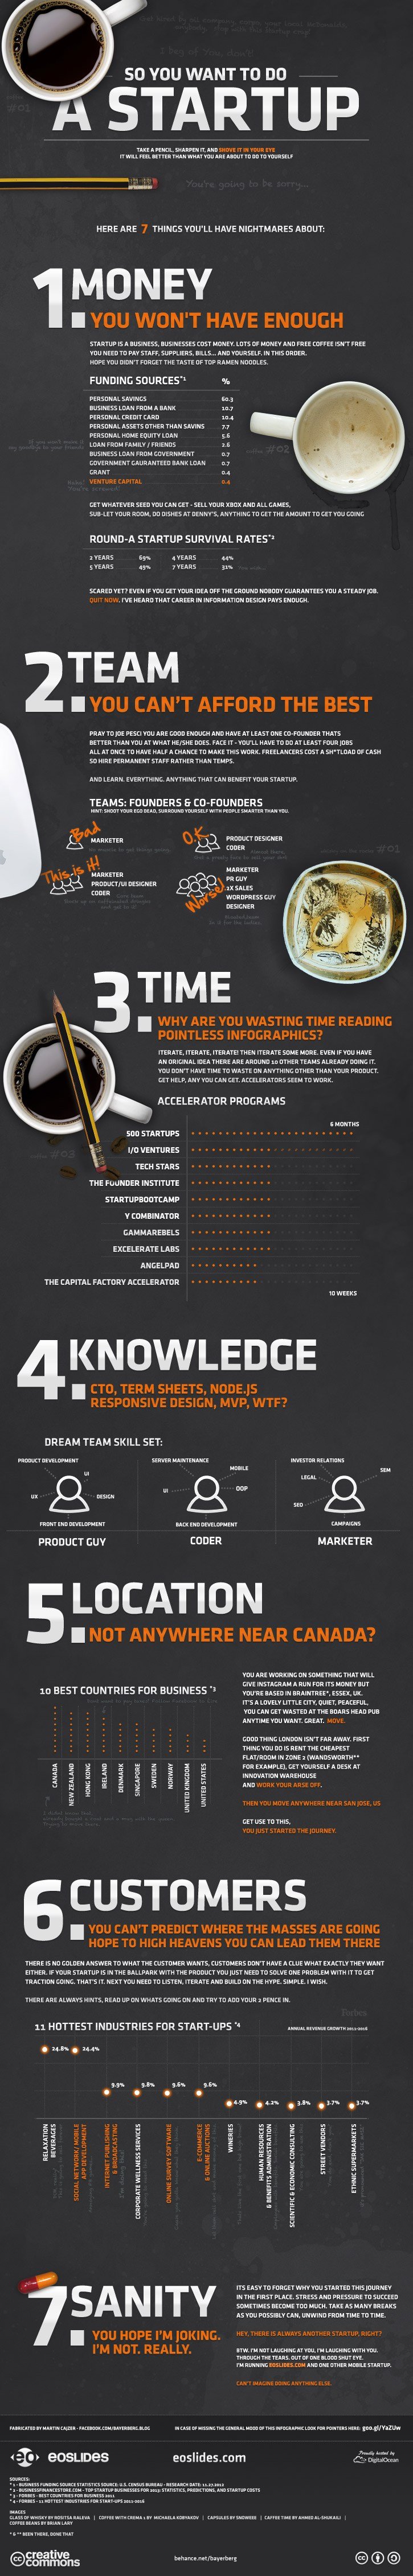 infographic5